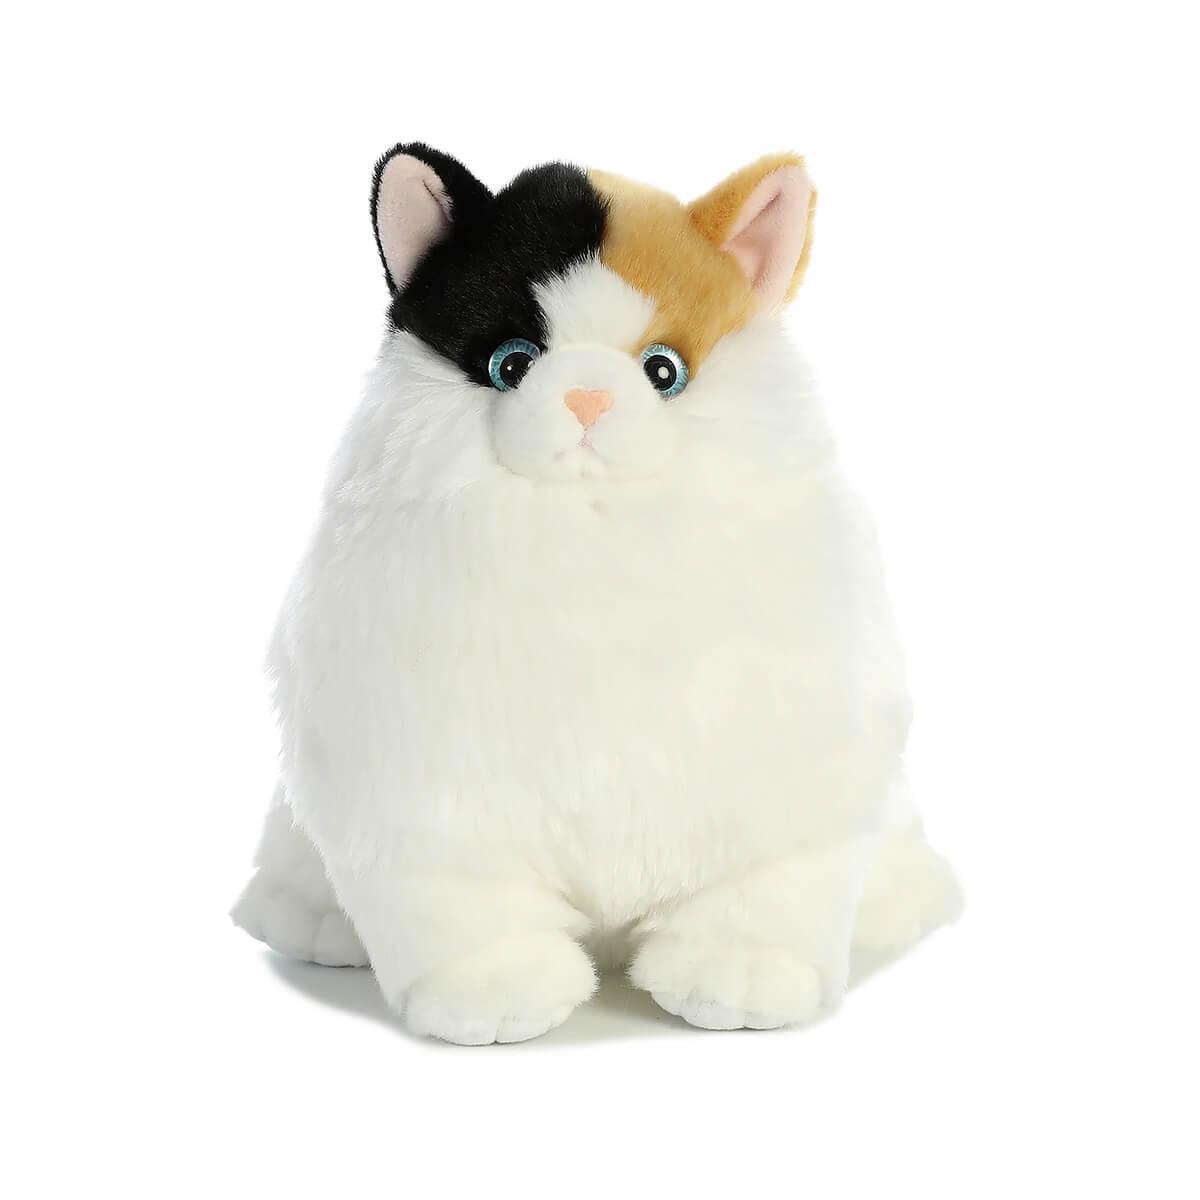  Calico Cat Plush